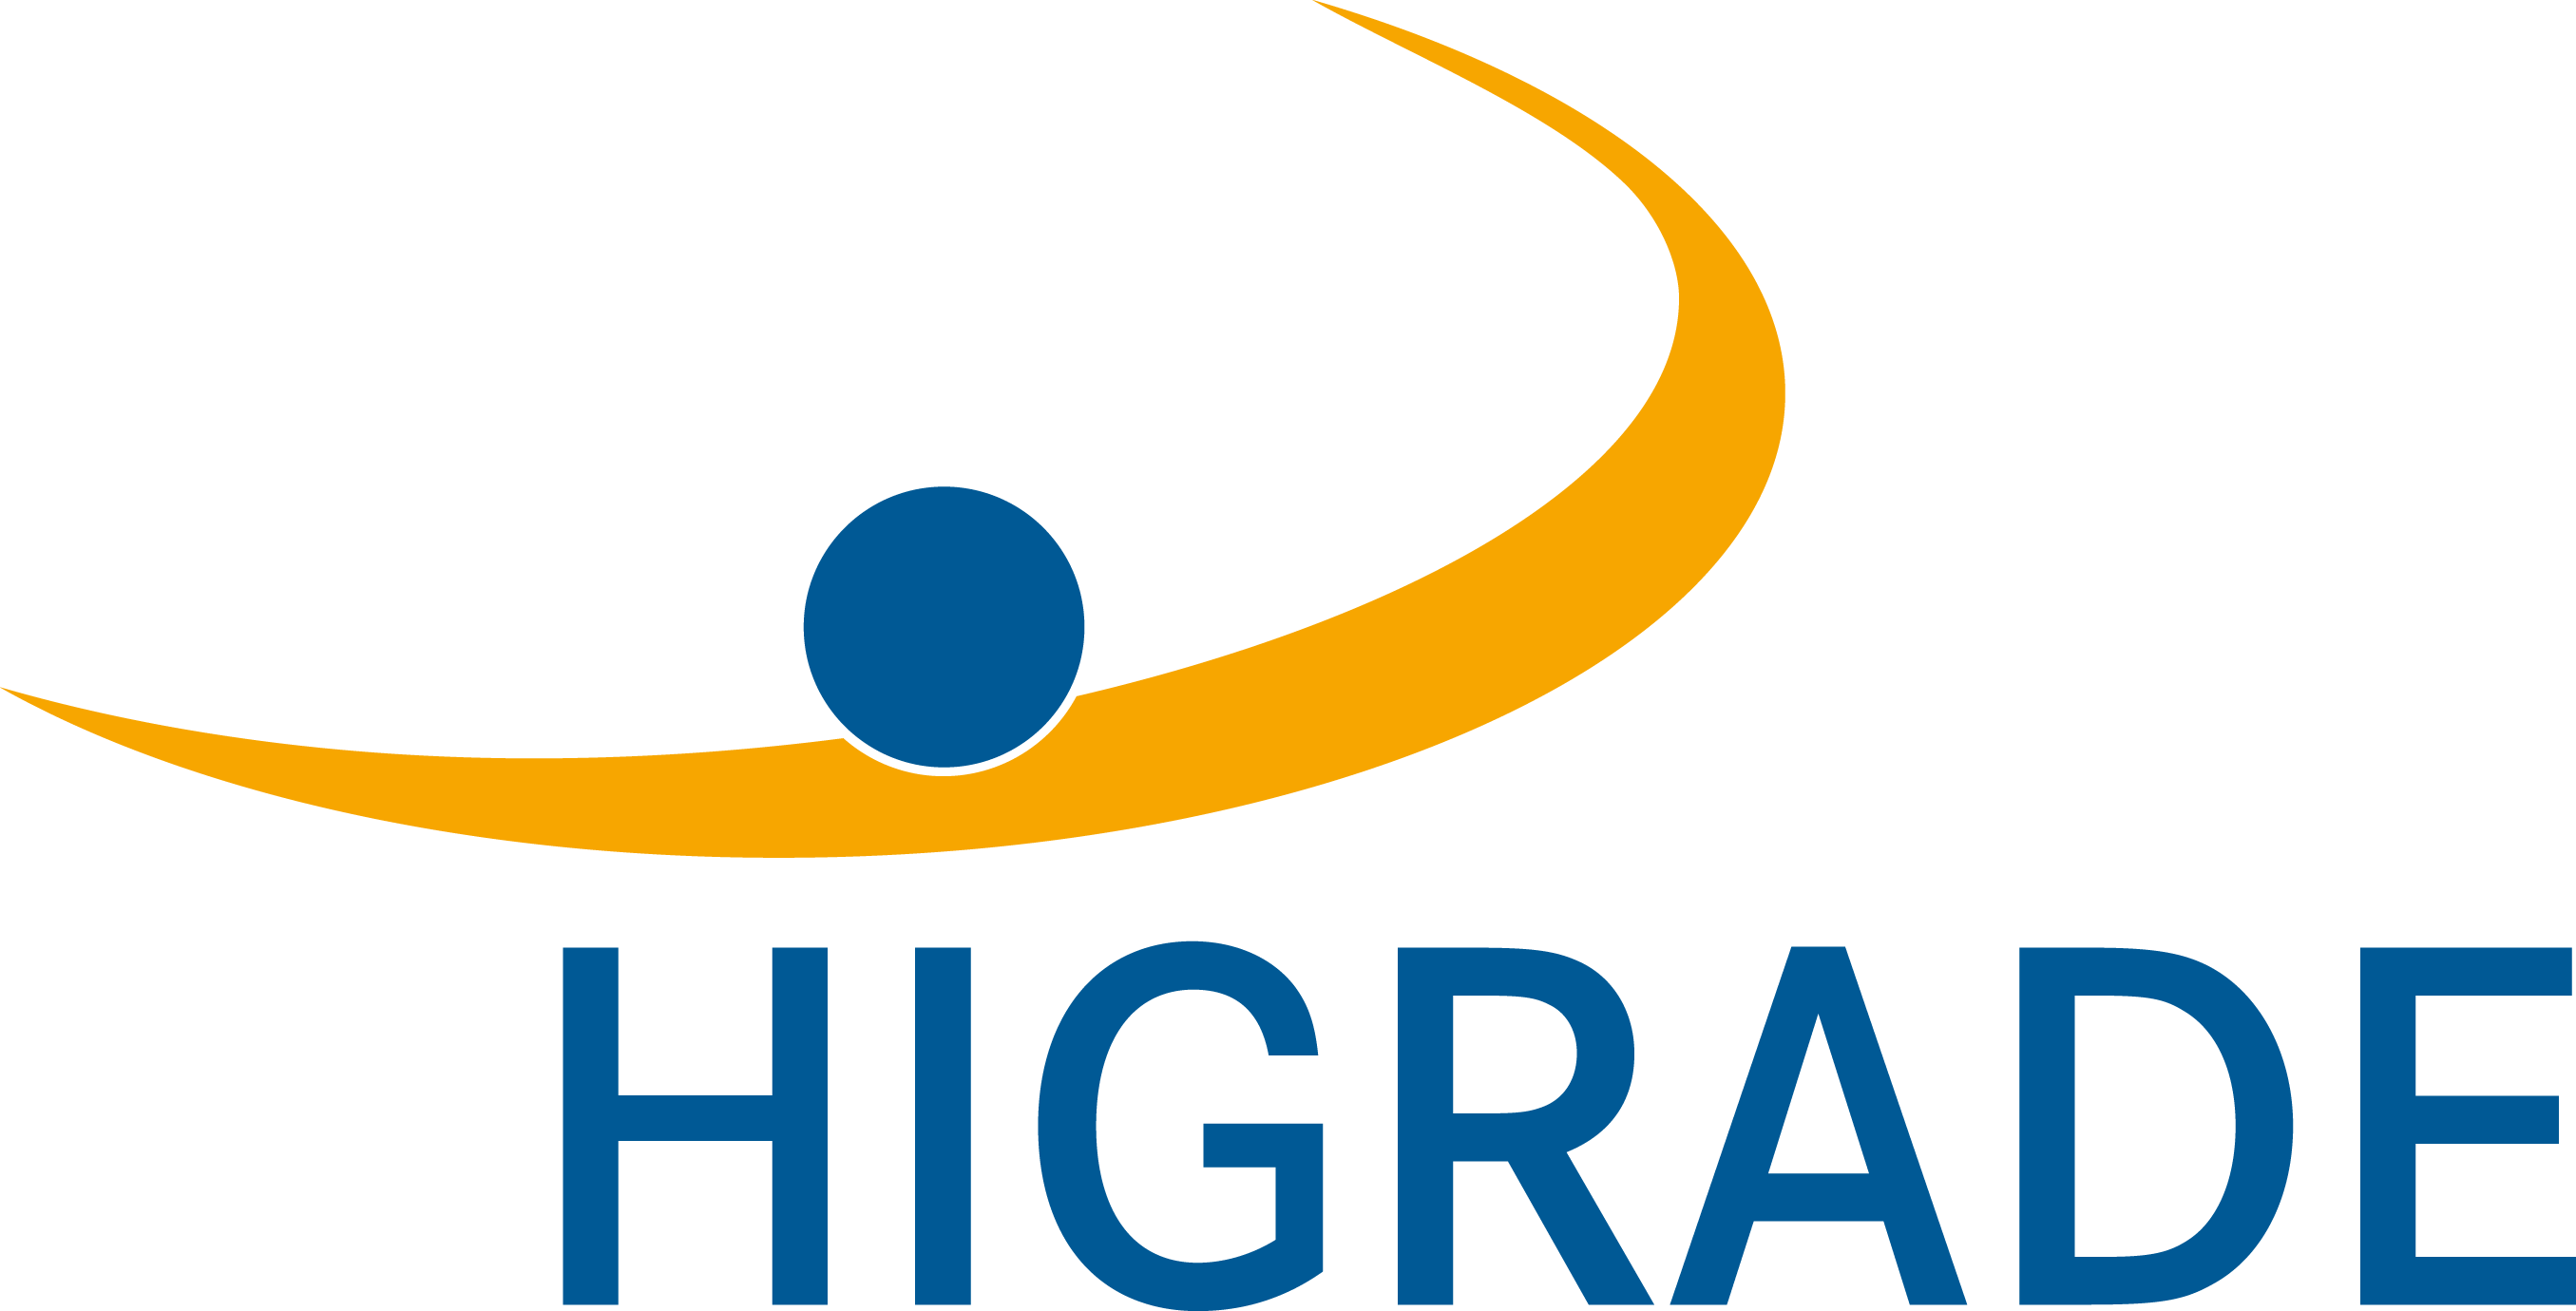 HIGRADE Logo